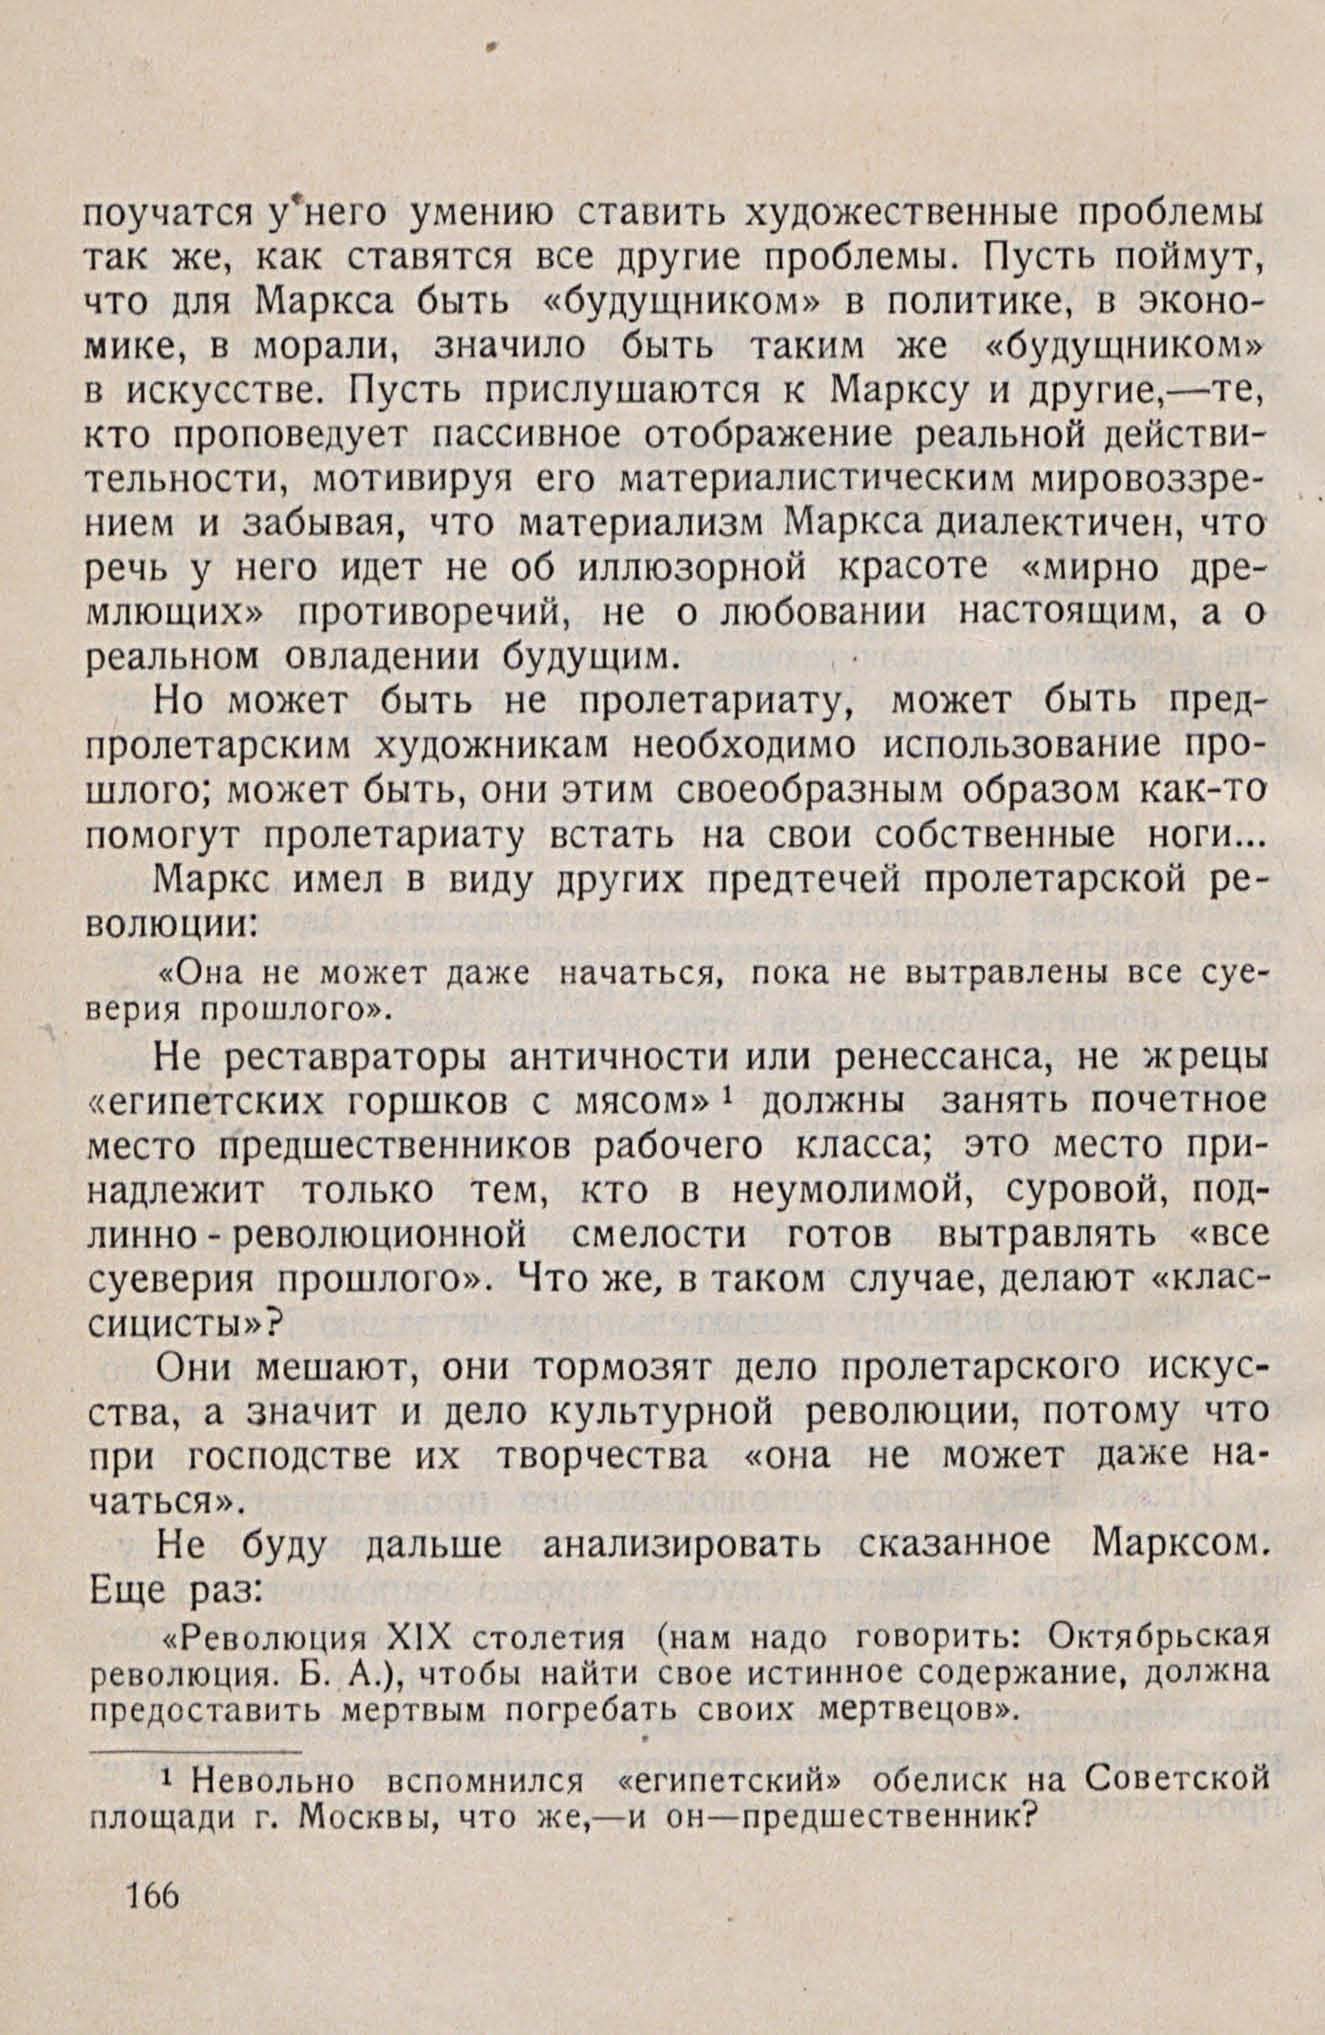 Социологическая поэтика / Б. Арватов. — Москва : Издательство «Федерация», 1928